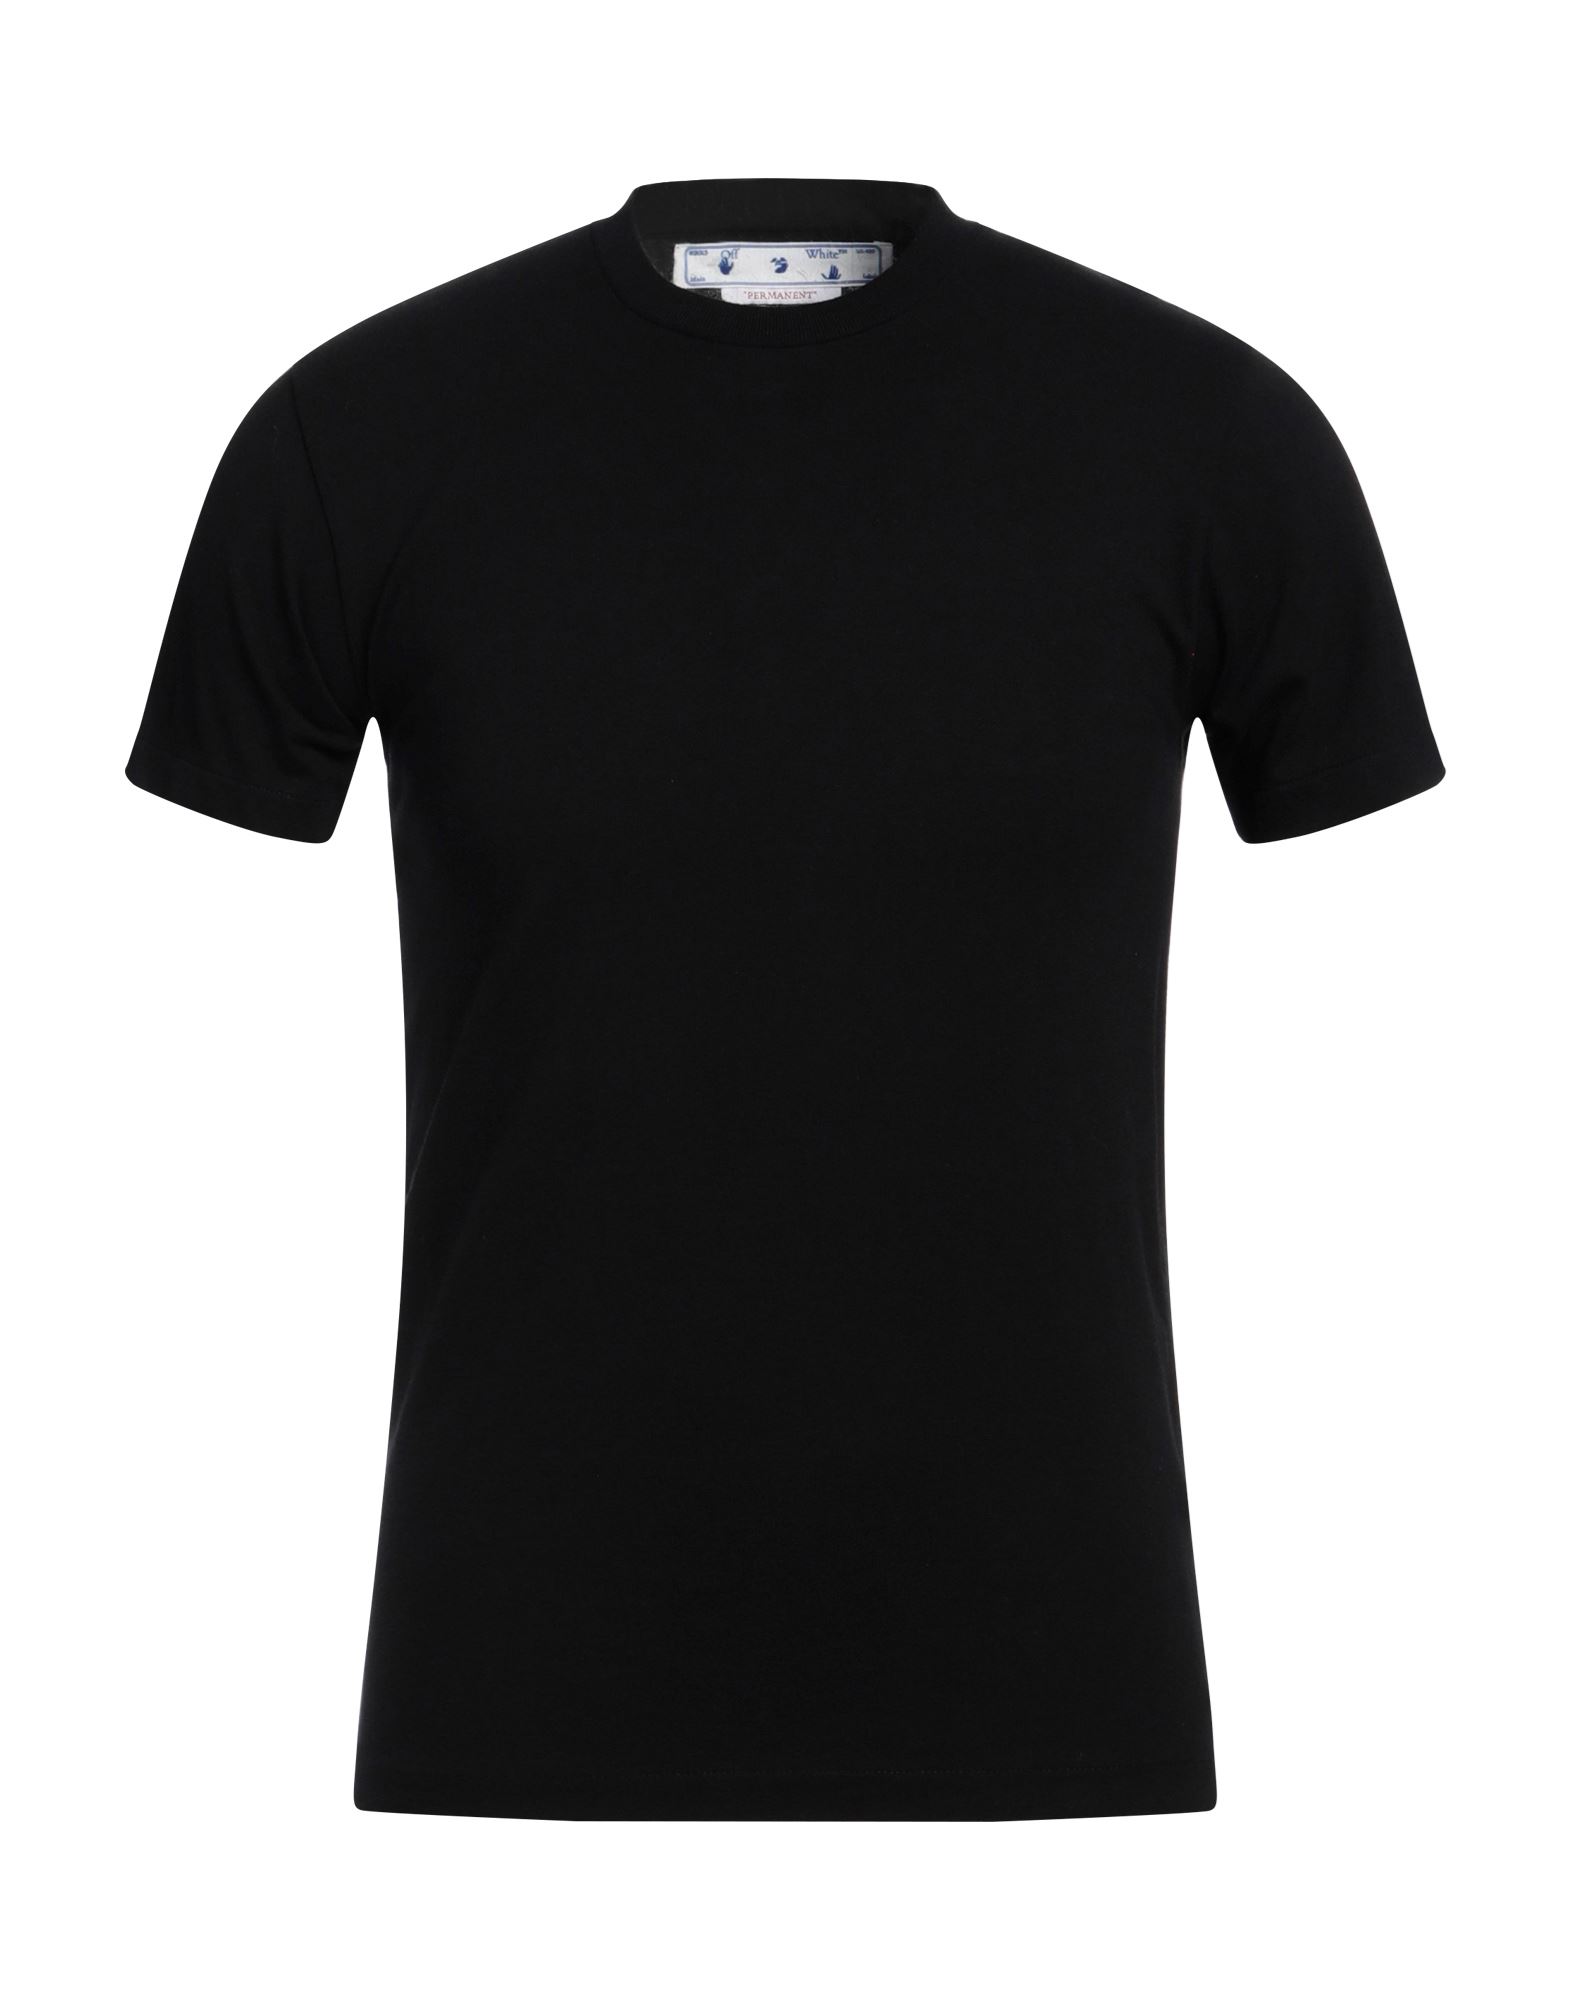 Off-white Man T-shirt Black Size Xs Cotton